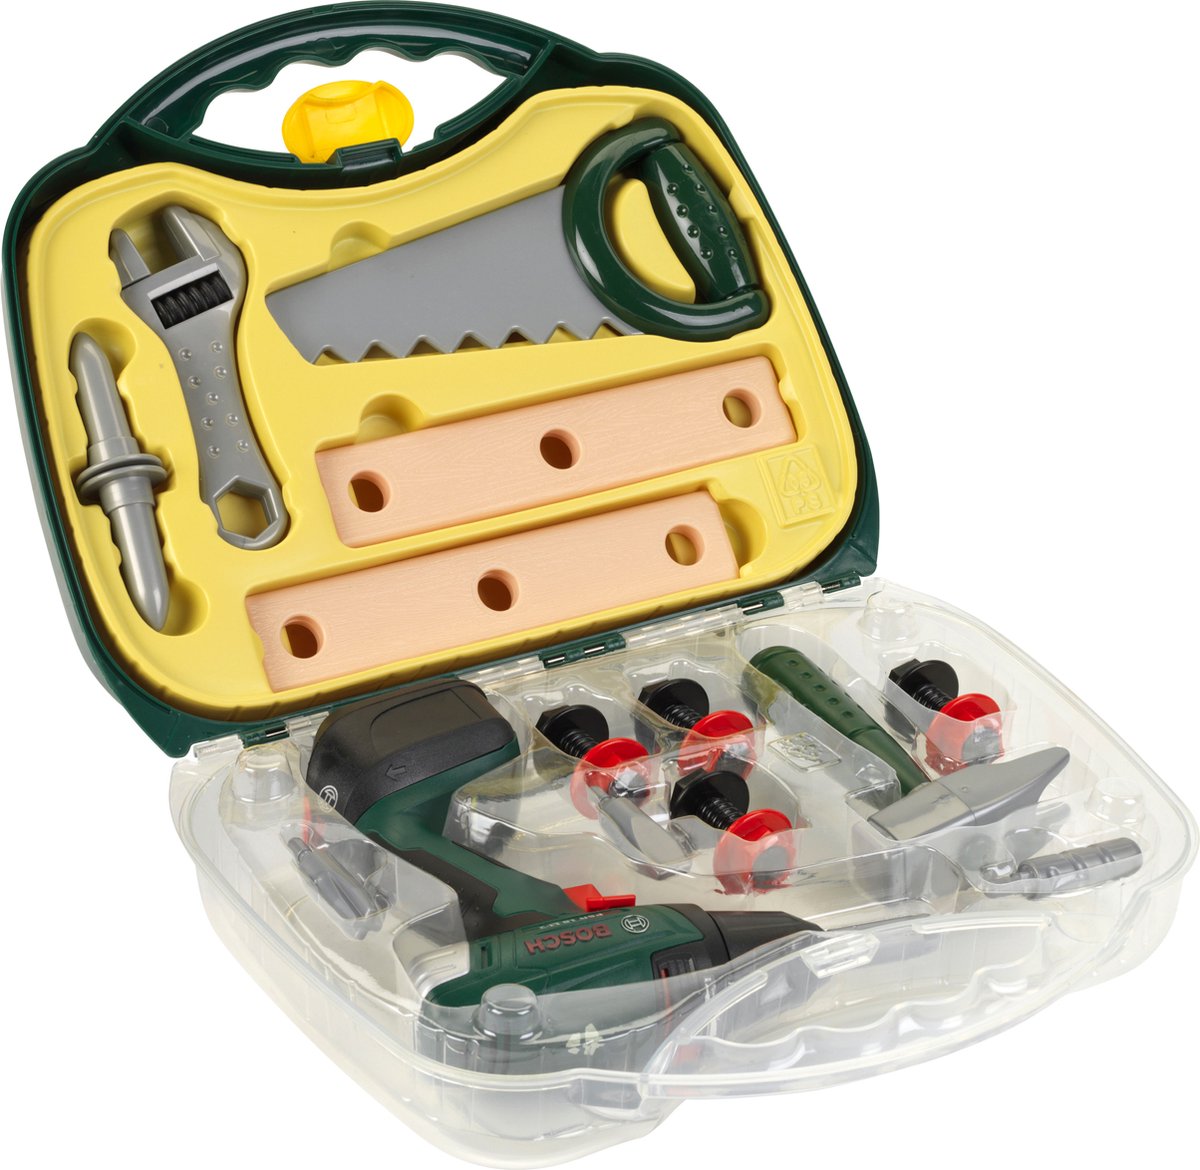 Klein Toys Bosch werkkoffer met accuschroevendraaier - incl. meer gereedschap, verwisselbare opzetstukken, licht- en geluidseffecten - groen geel - Klein